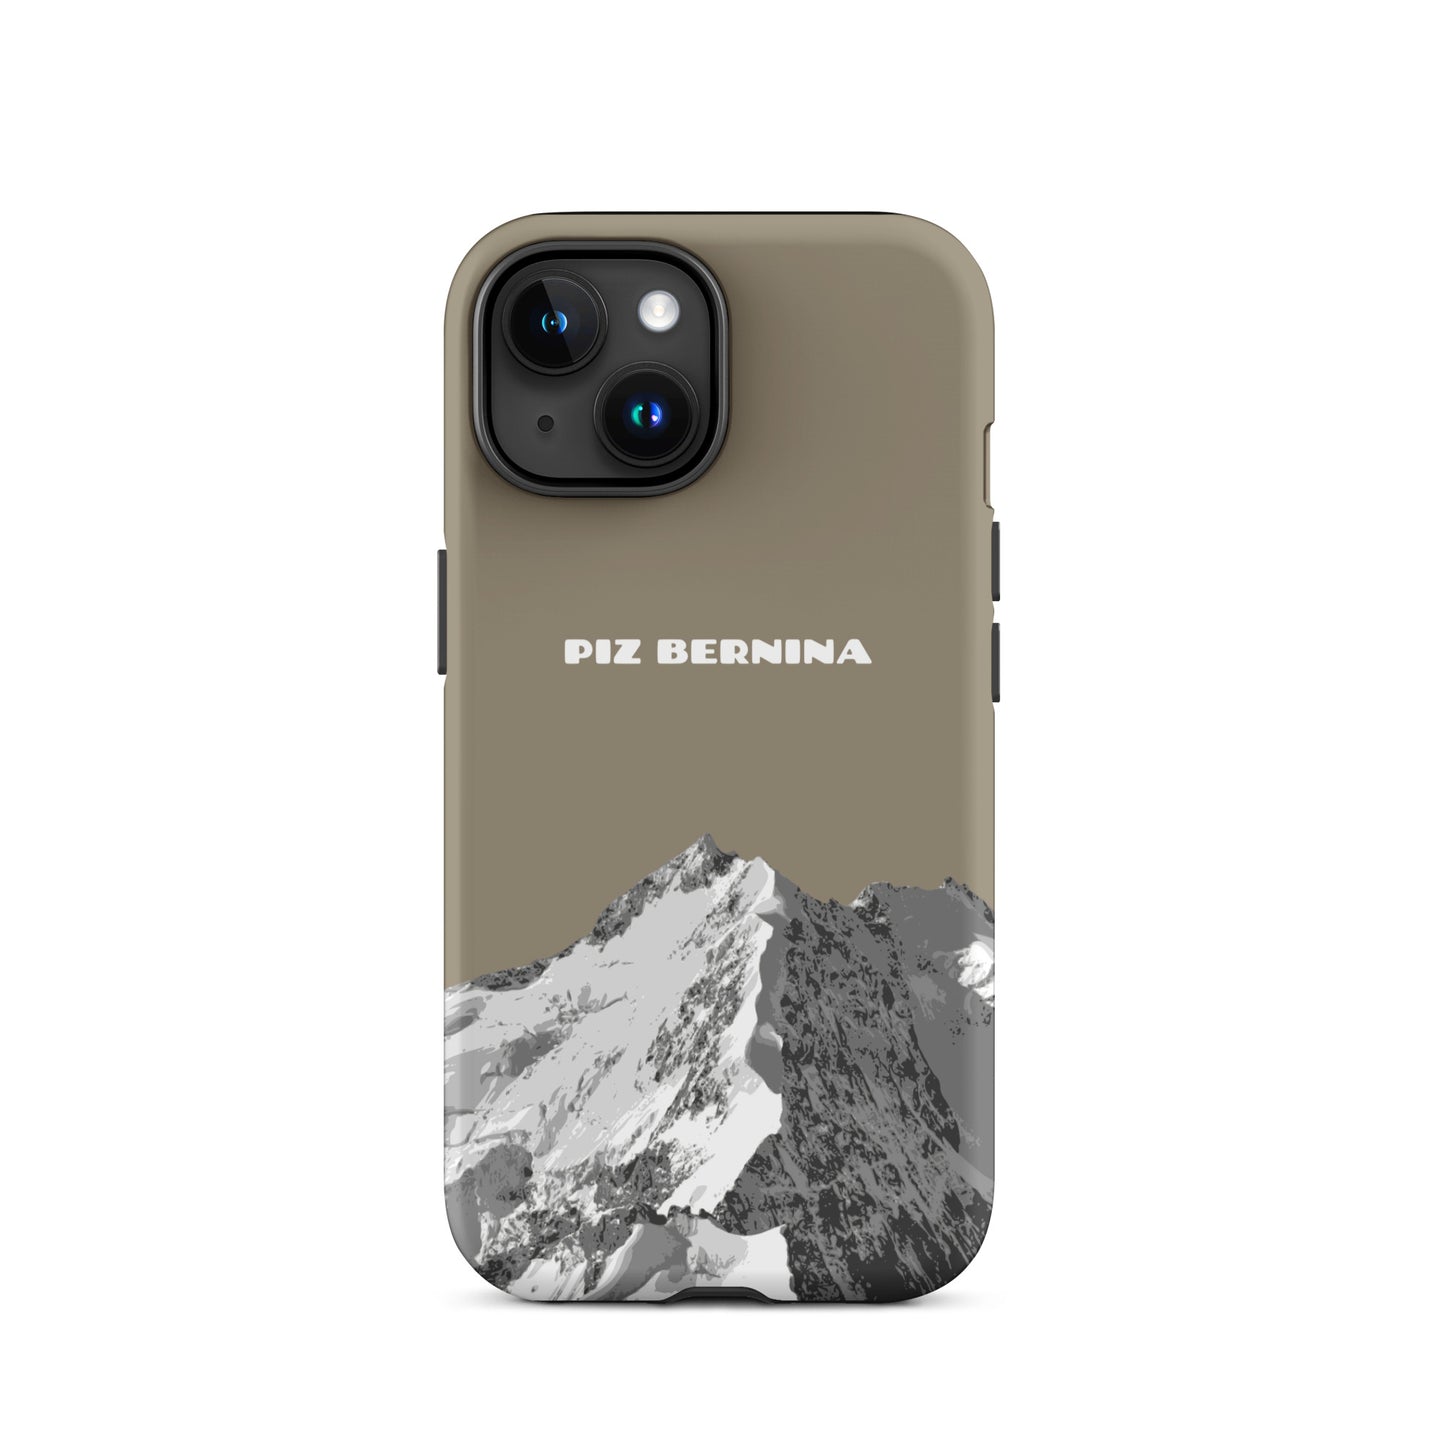 Hülle für das iPhone 15 von Apple in der Farbe Graubraun, dass den Piz Bernina in Graubünden zeigt.